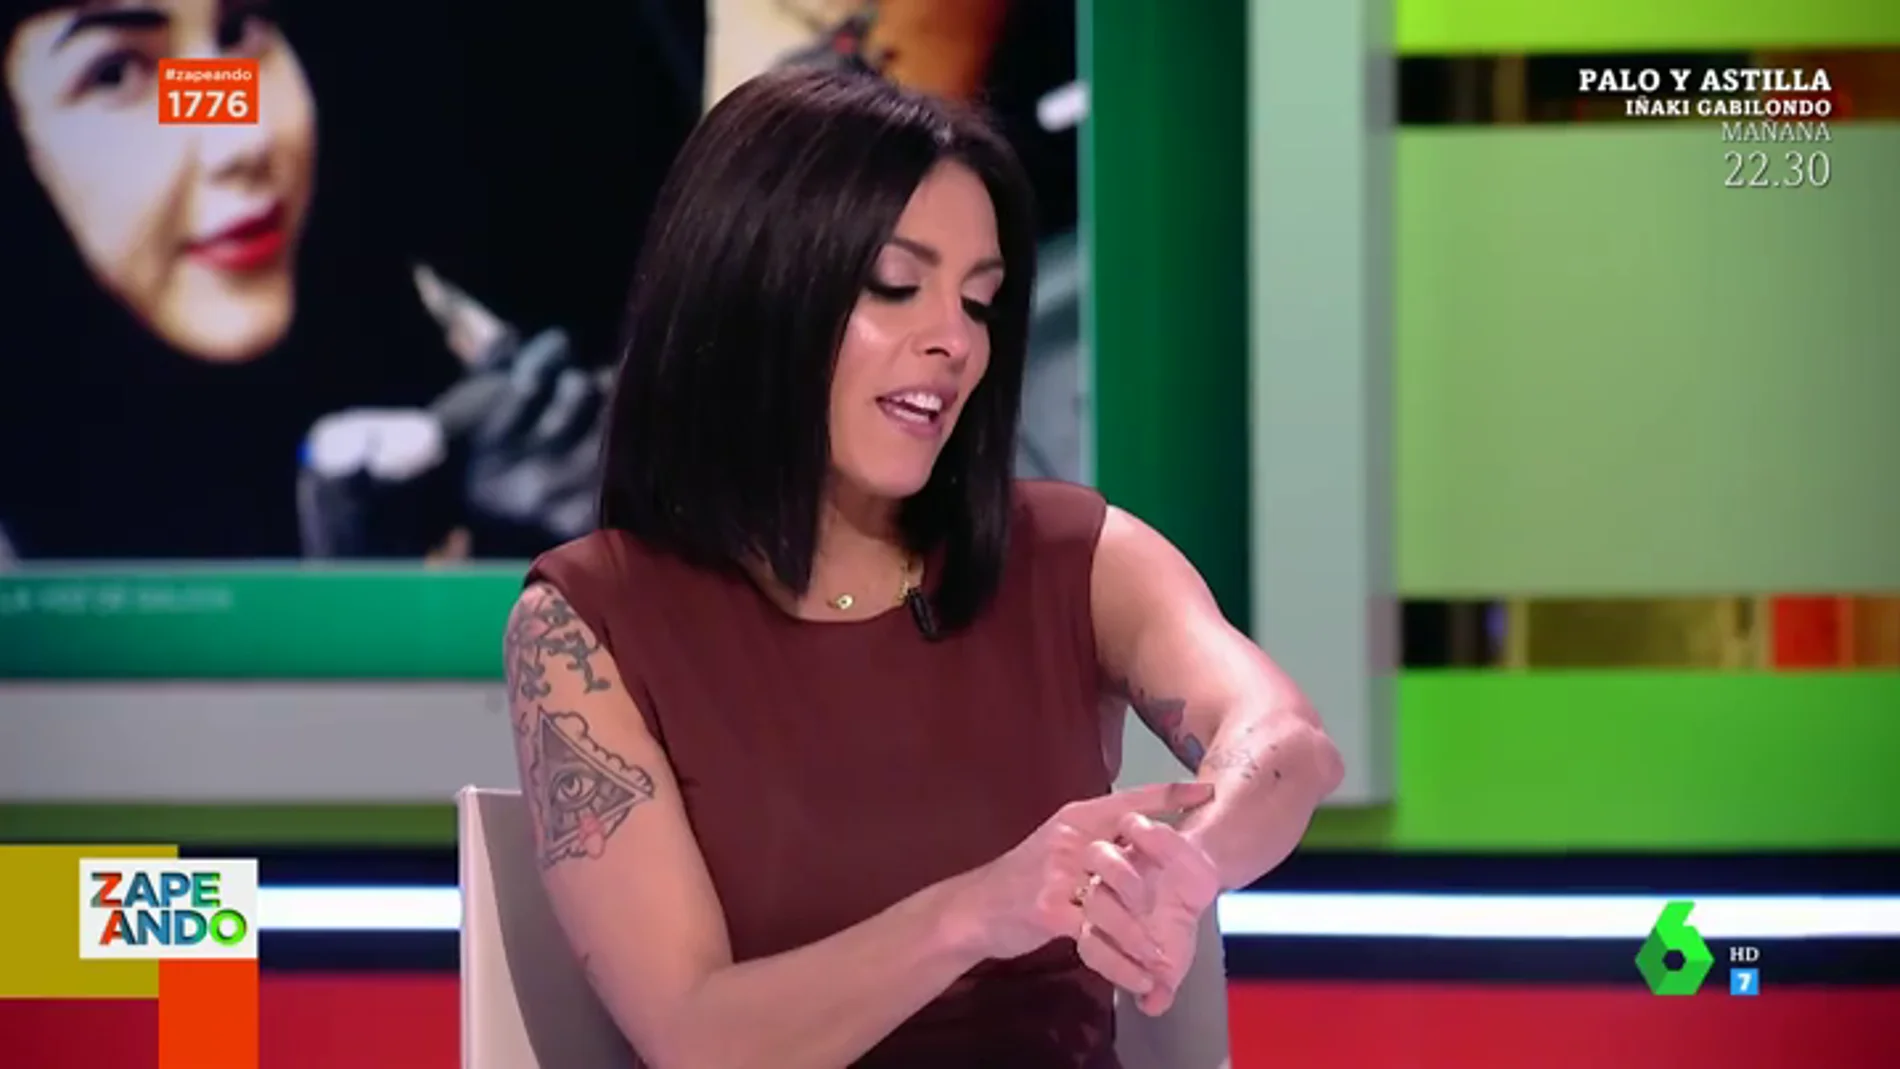 Este es el tatuaje que Lorena Castell se quiere hacer por amor: "Me quiero poner su cara en el brazo"